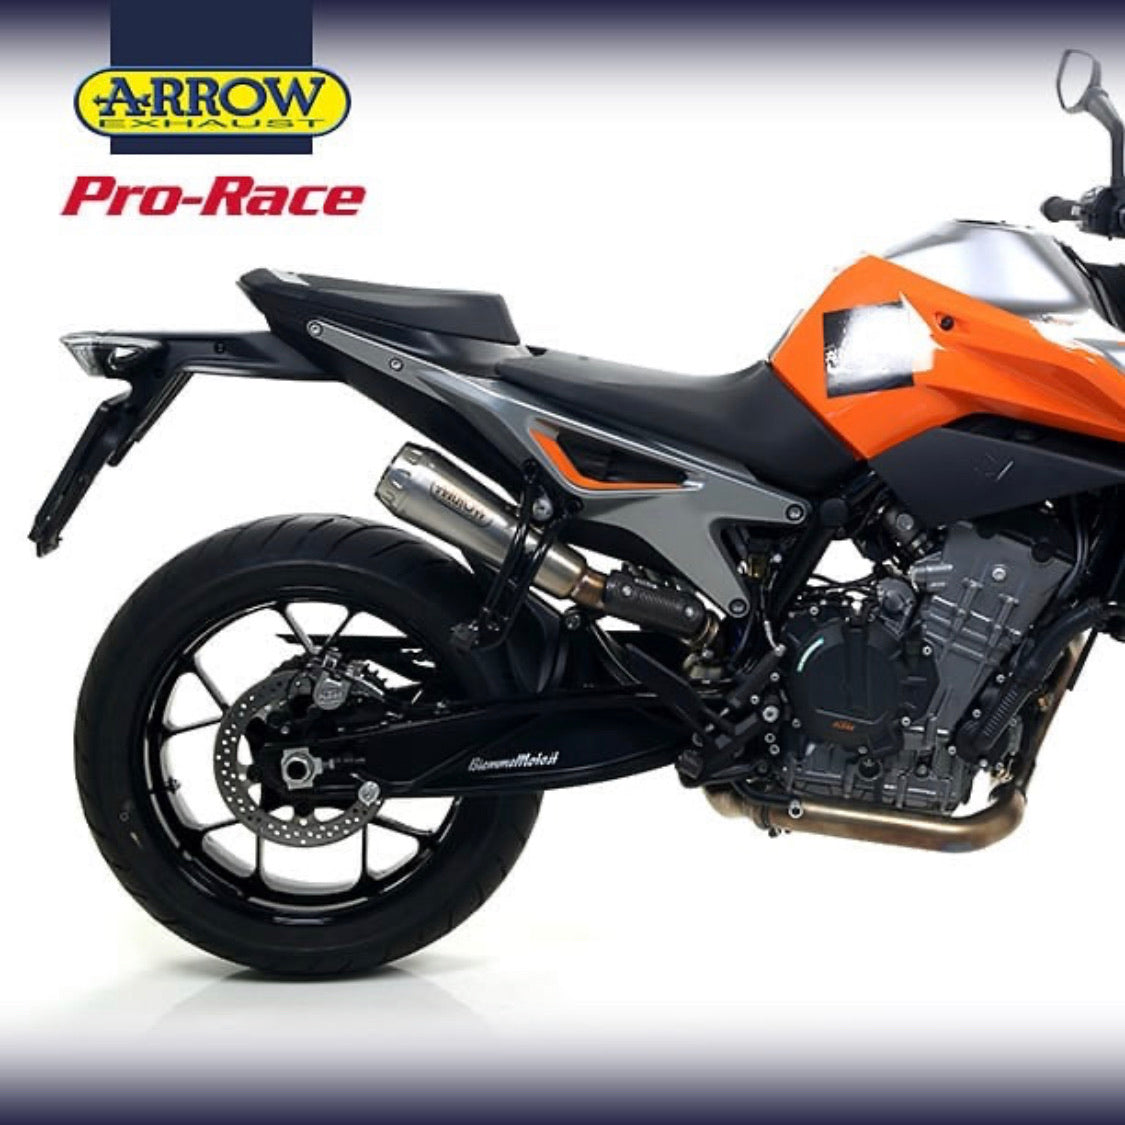 Pro Race - Averys Motorcycles